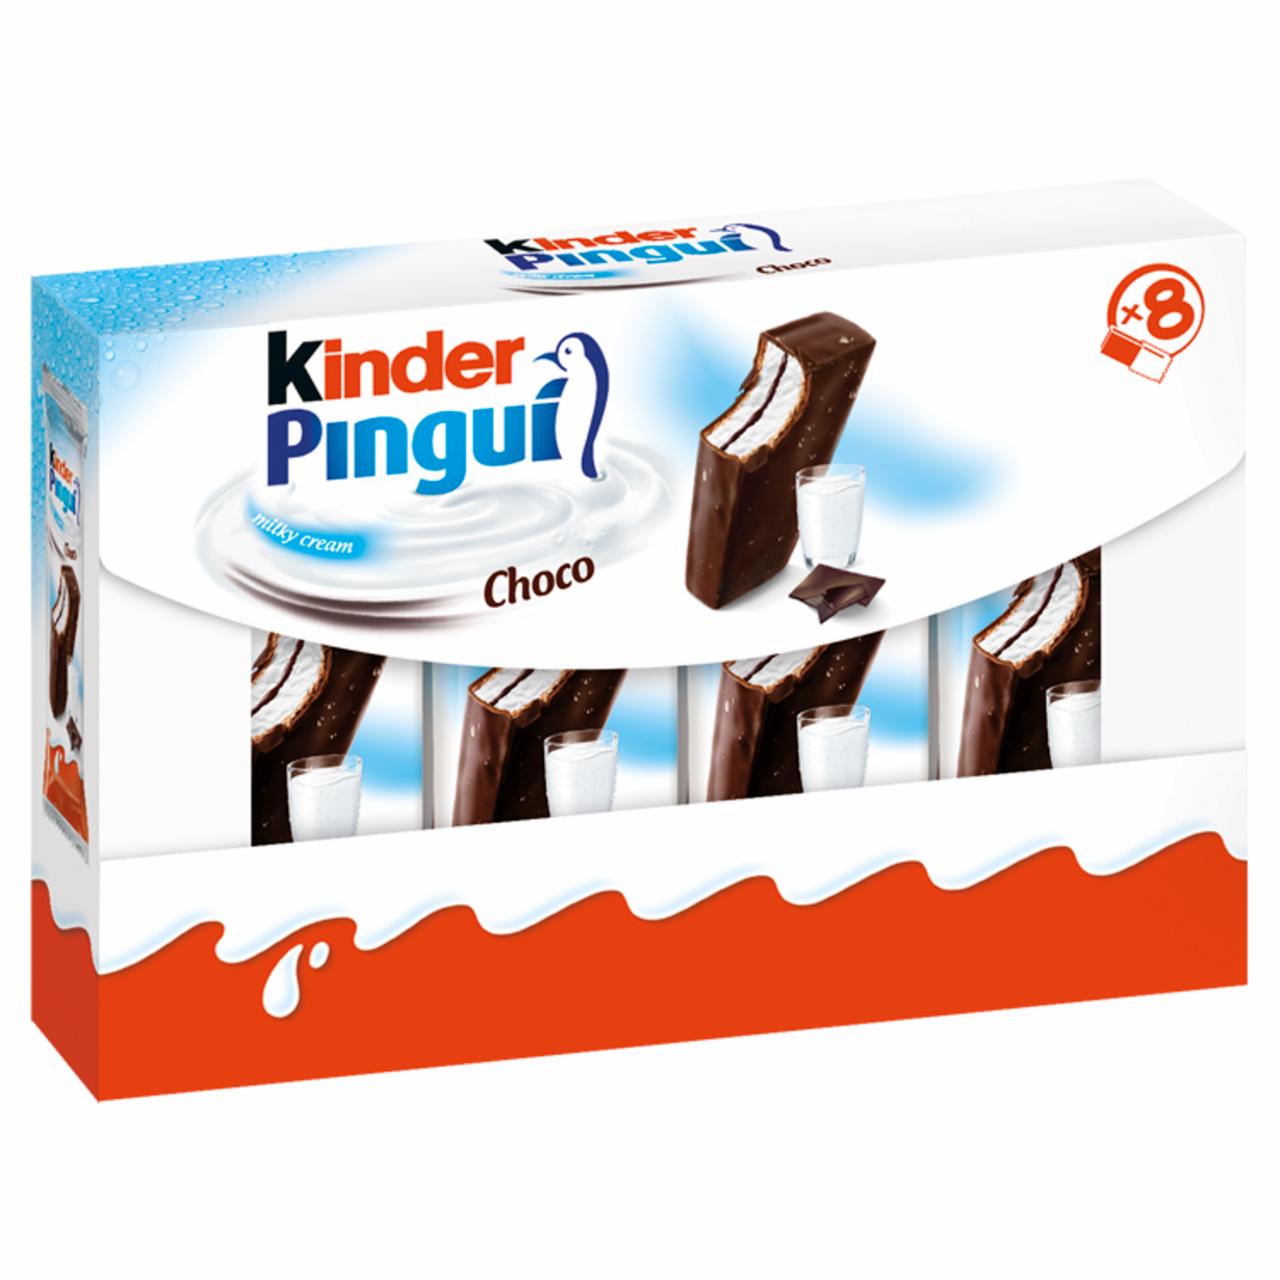 Zdjęcia - Kinder Pingui Choco Biszkopt z mlecznym nadzieniem pokryty czekoladą 8 x 30 g